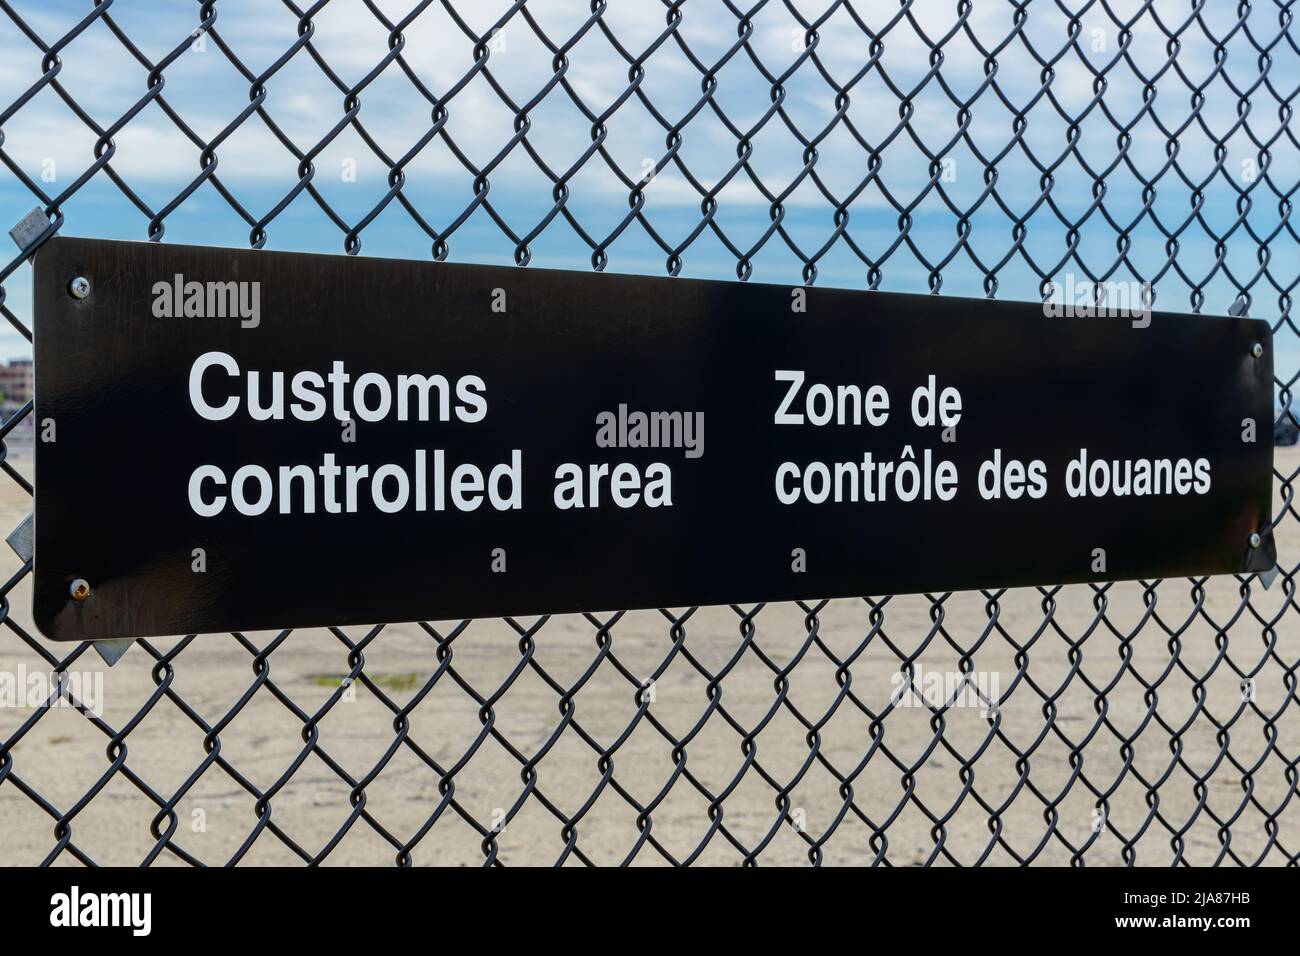 Une affiche bilingue de zone contrôlée par les douanes en anglais et en français sur une clôture à chaînette. Vue en angle avec ciel bleu au-dessus, parking en dessous. Banque D'Images